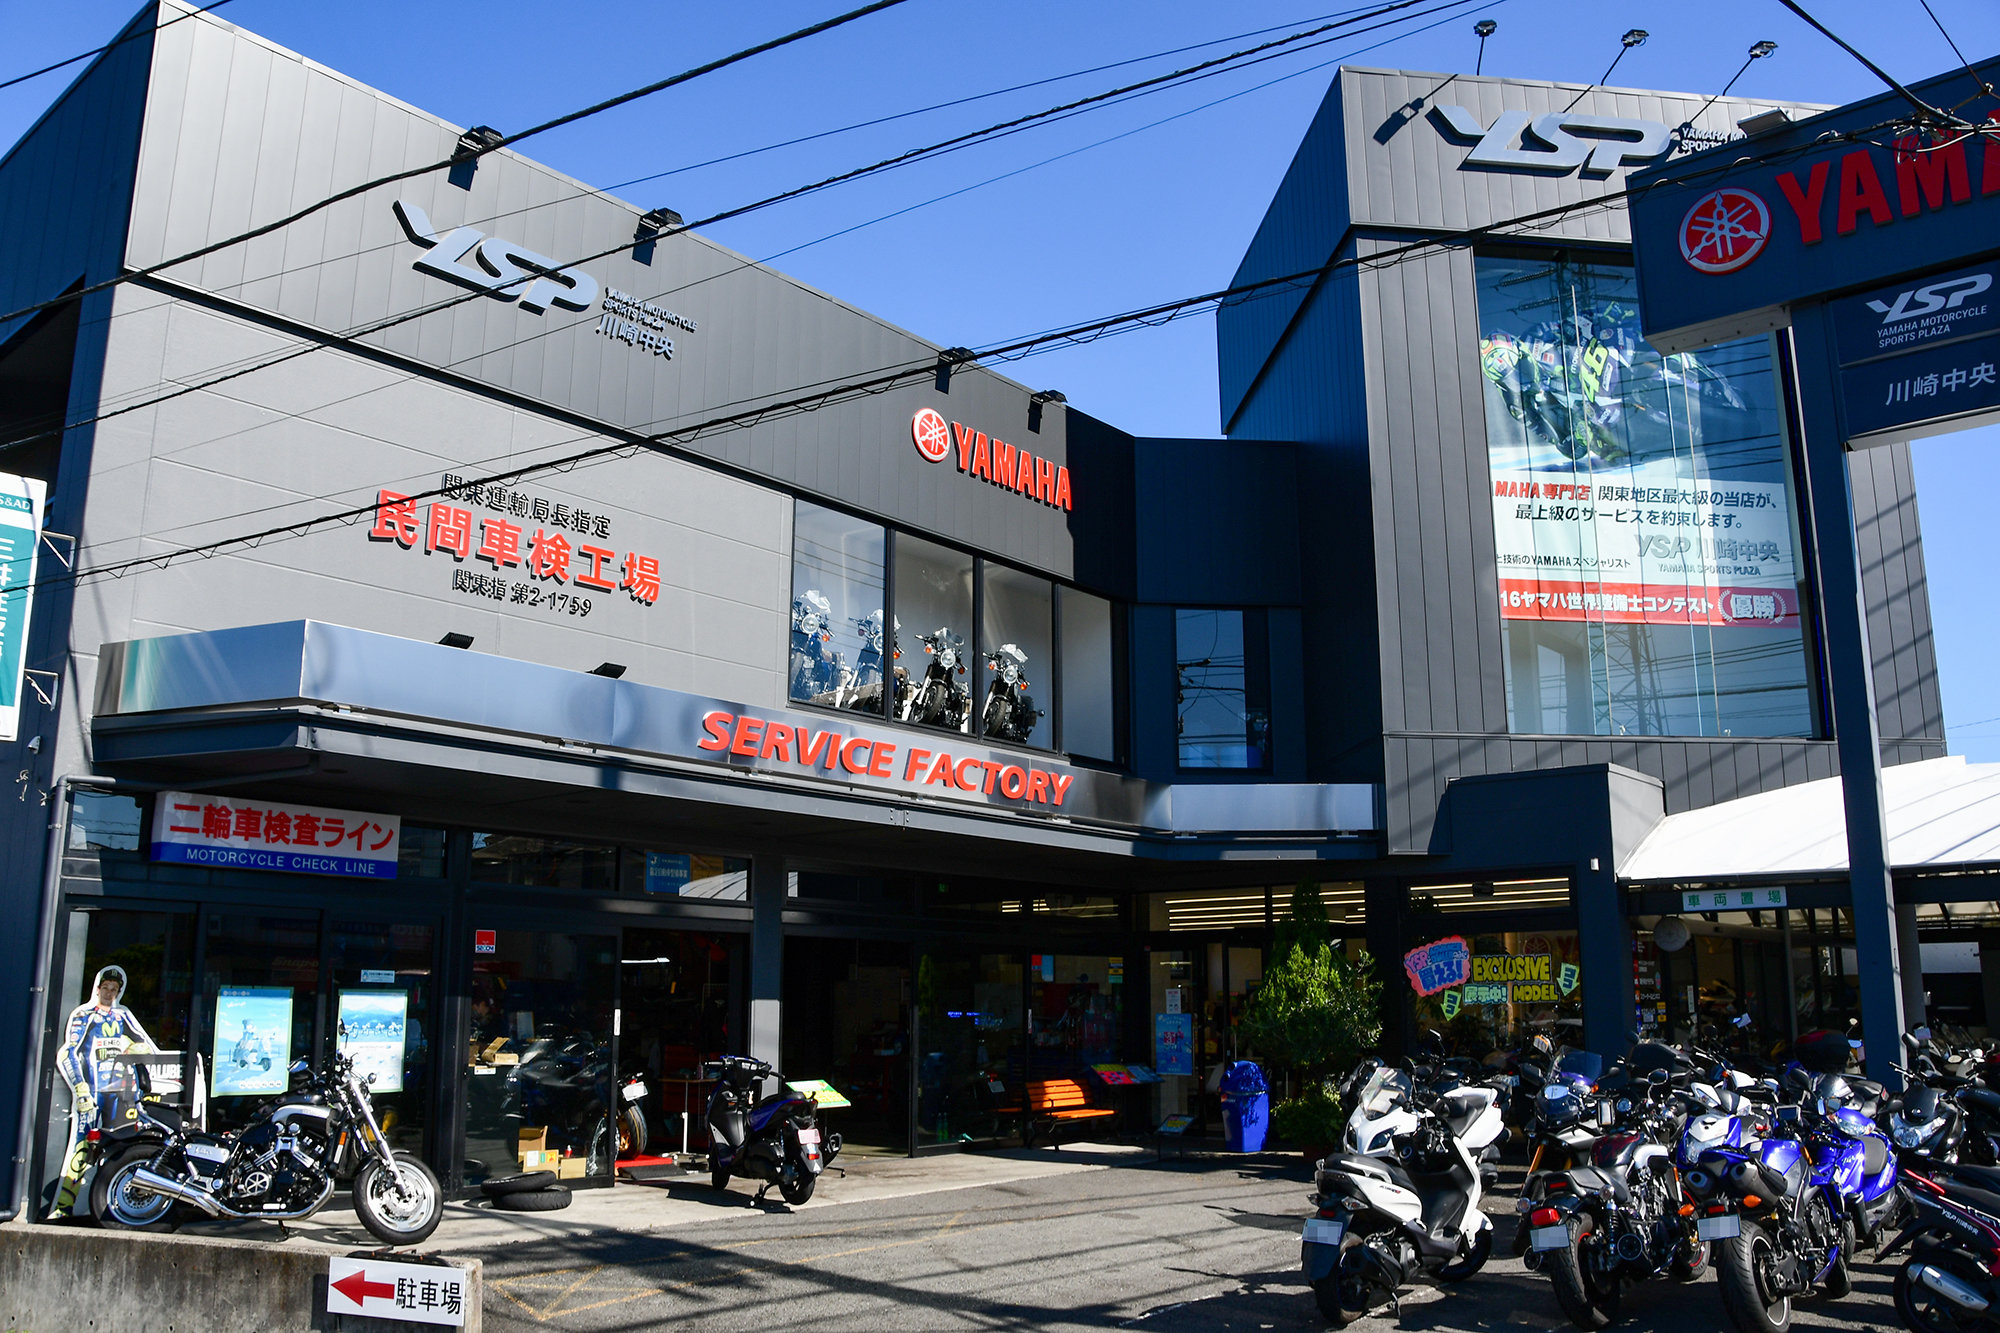 ヤマハを愛するすべてのお客さまに「最高のブランド体験」をお約束するヤマハスポーツバイク※専門店「YSP」。